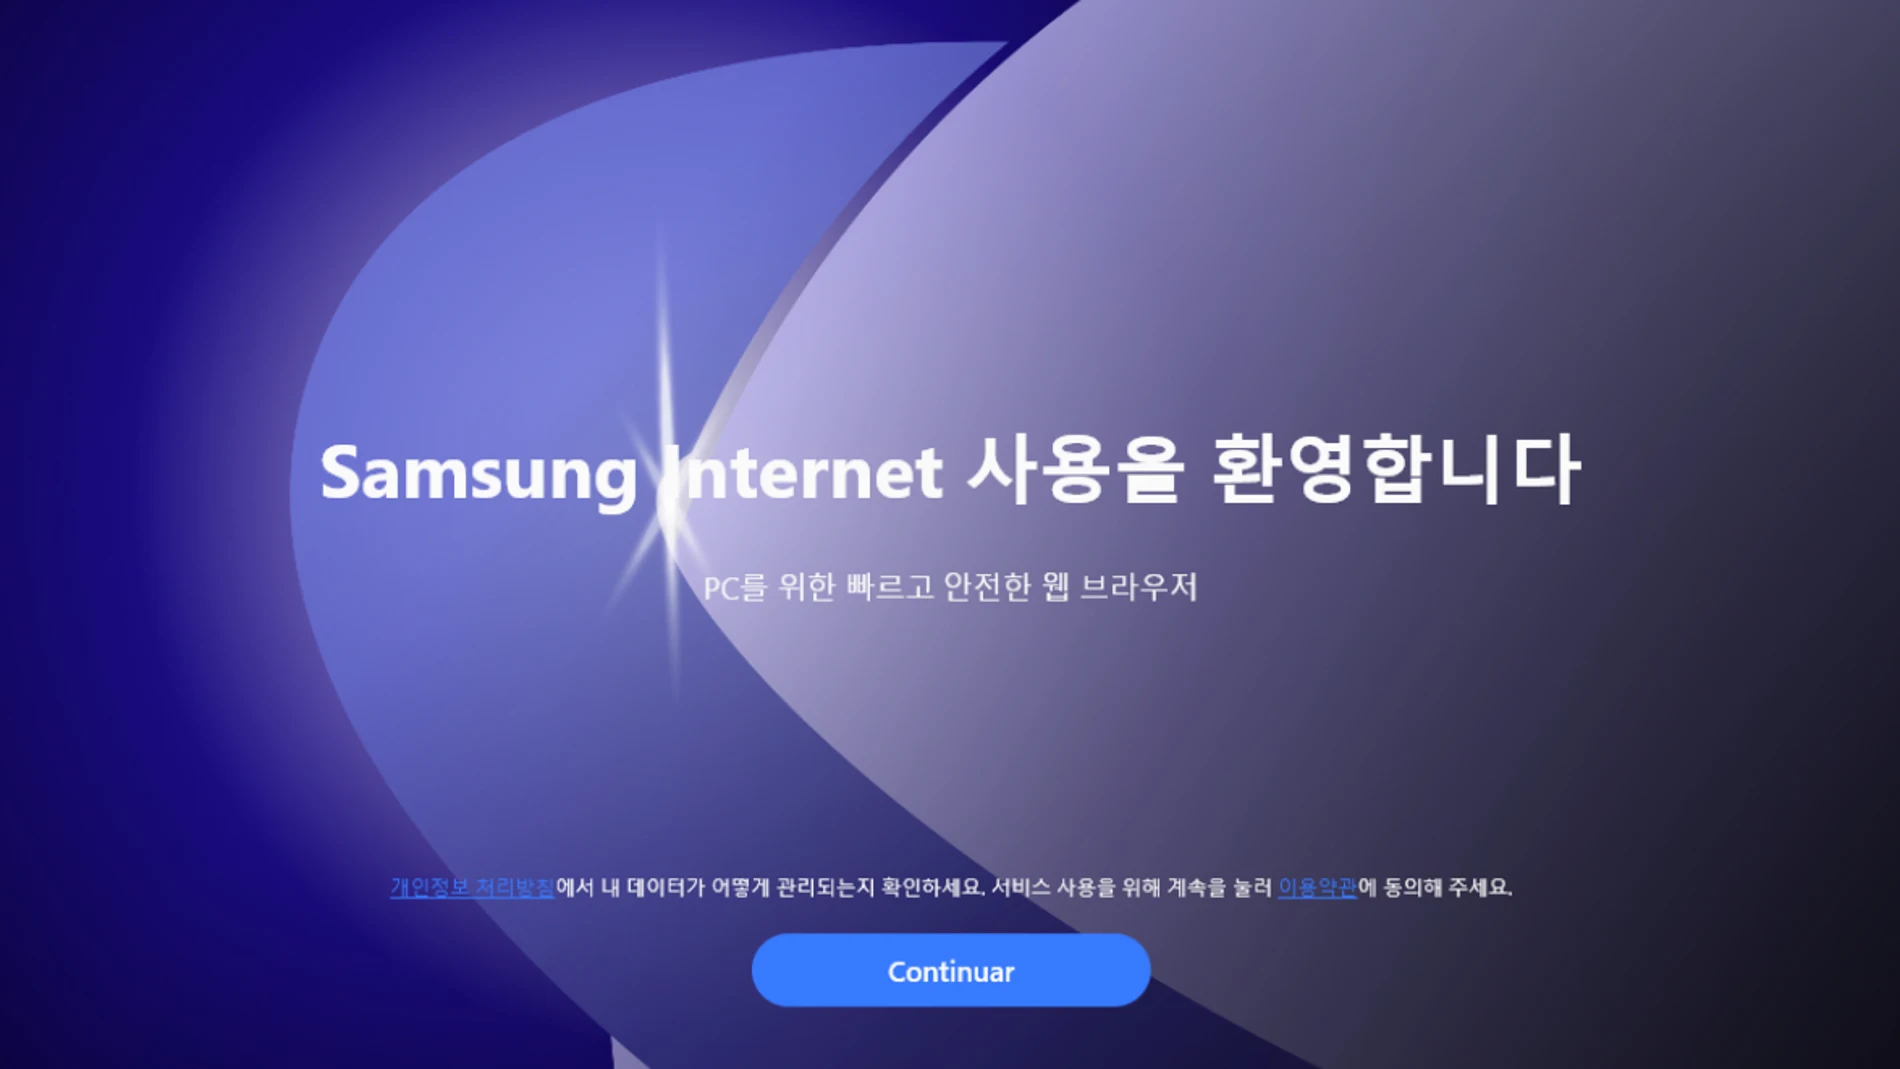 Samsung lanza su navegador Android, Samsung Internet, en Windows.